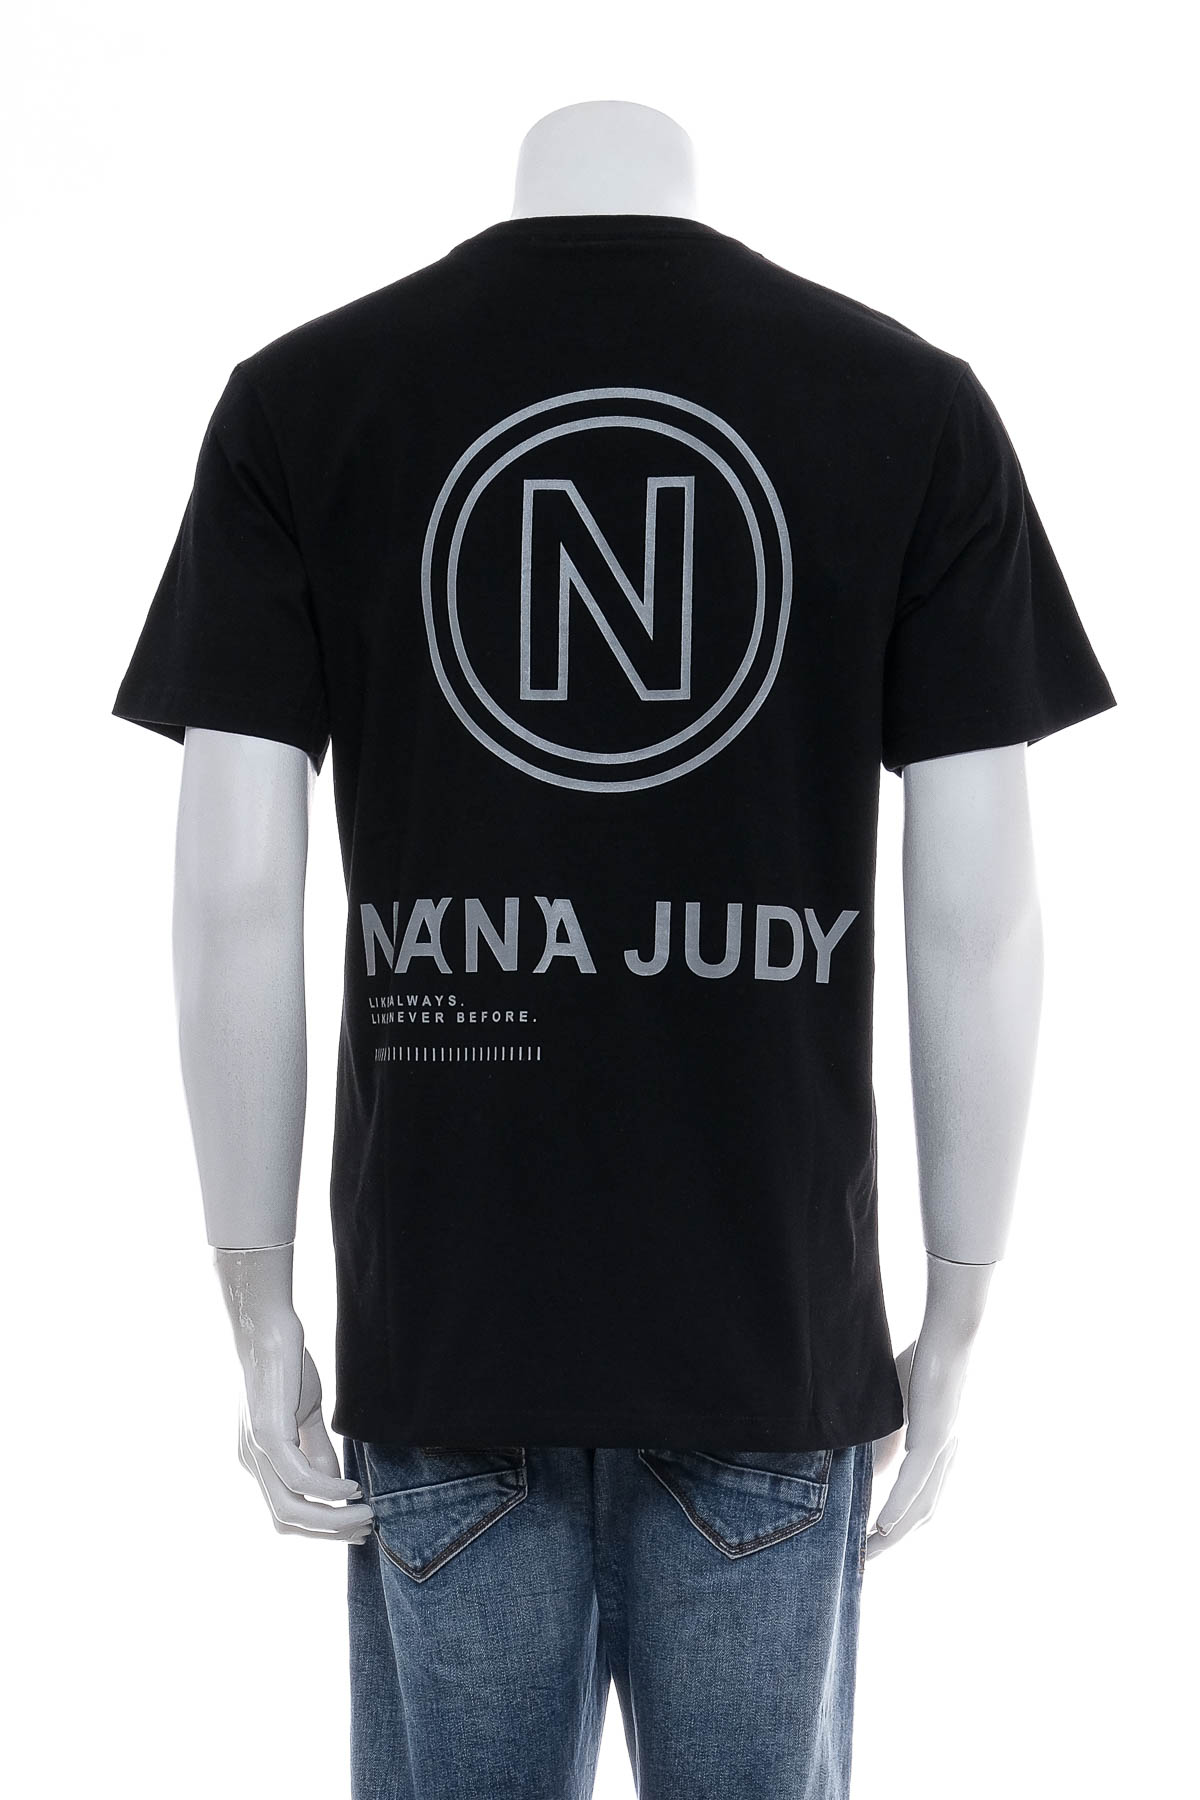 Αντρική μπλούζα - Nana Judy - 1